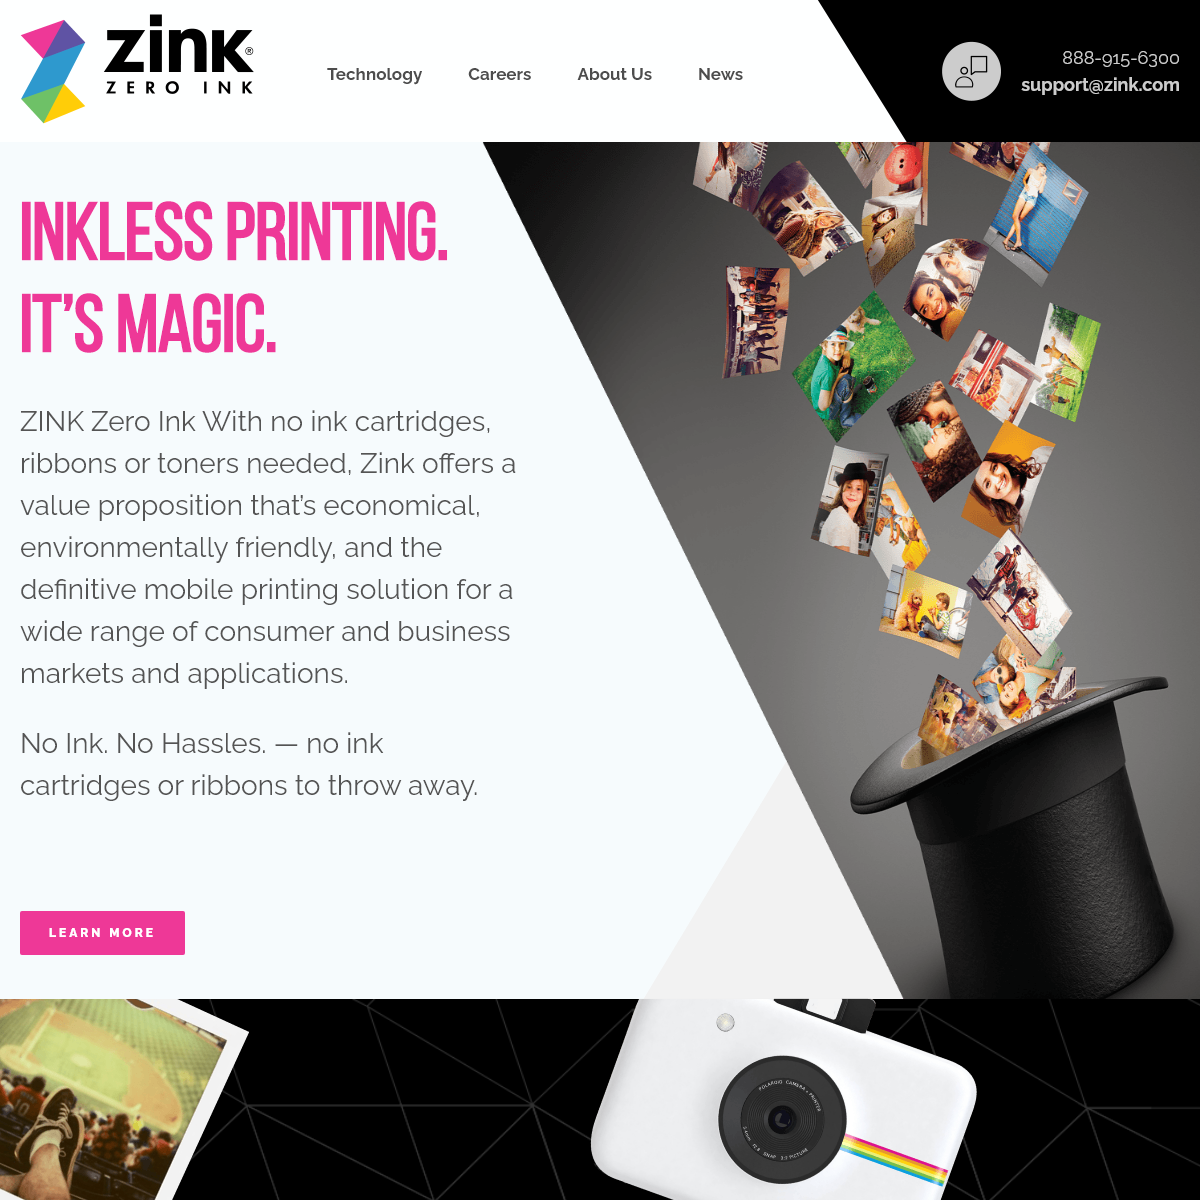 A complete backup of zink.com